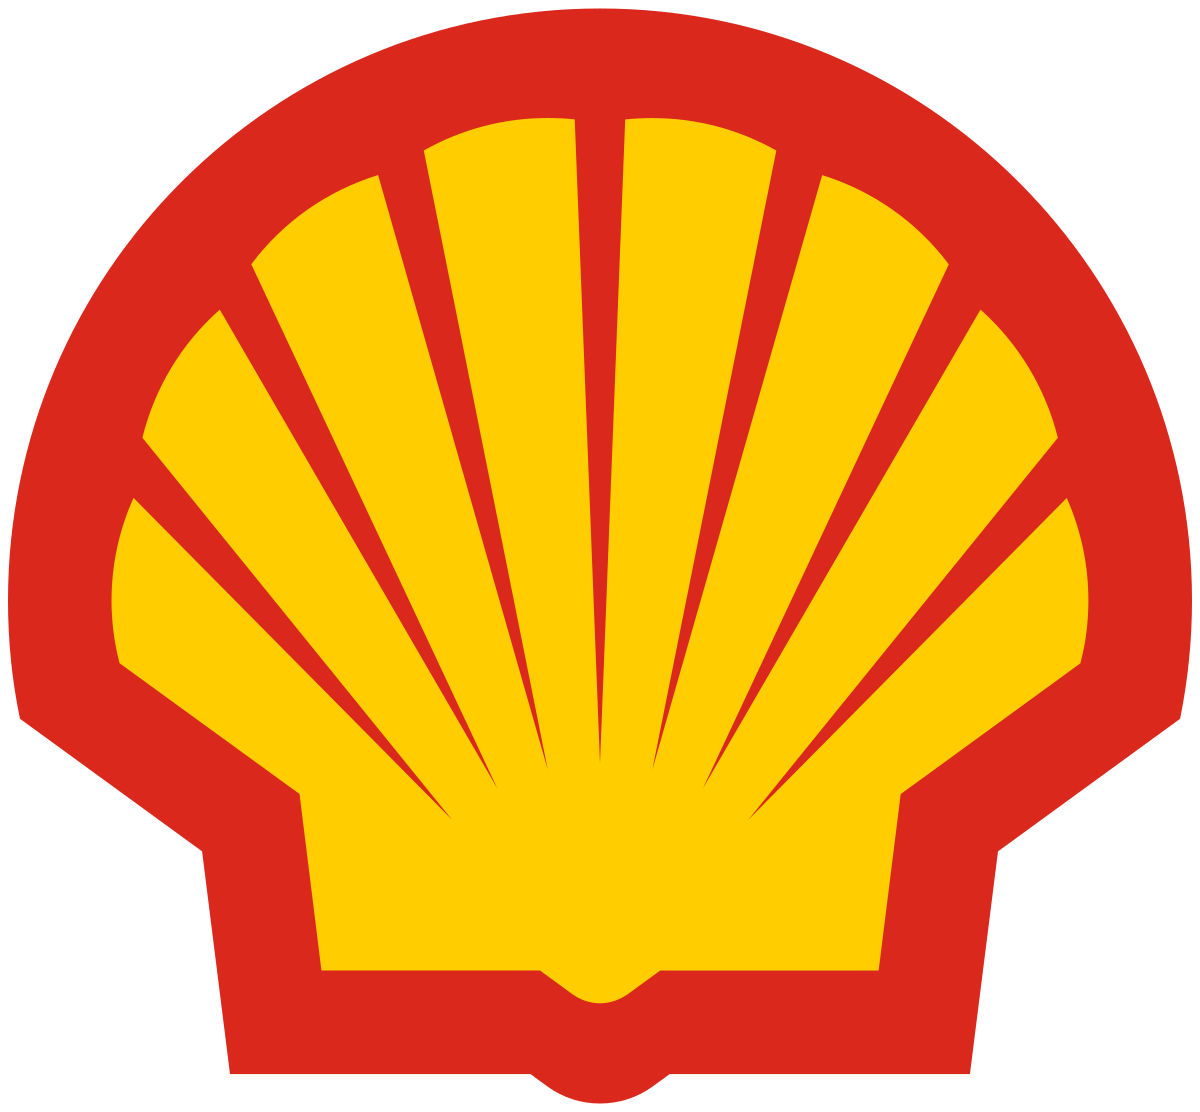 Shell Plc Wikipedia